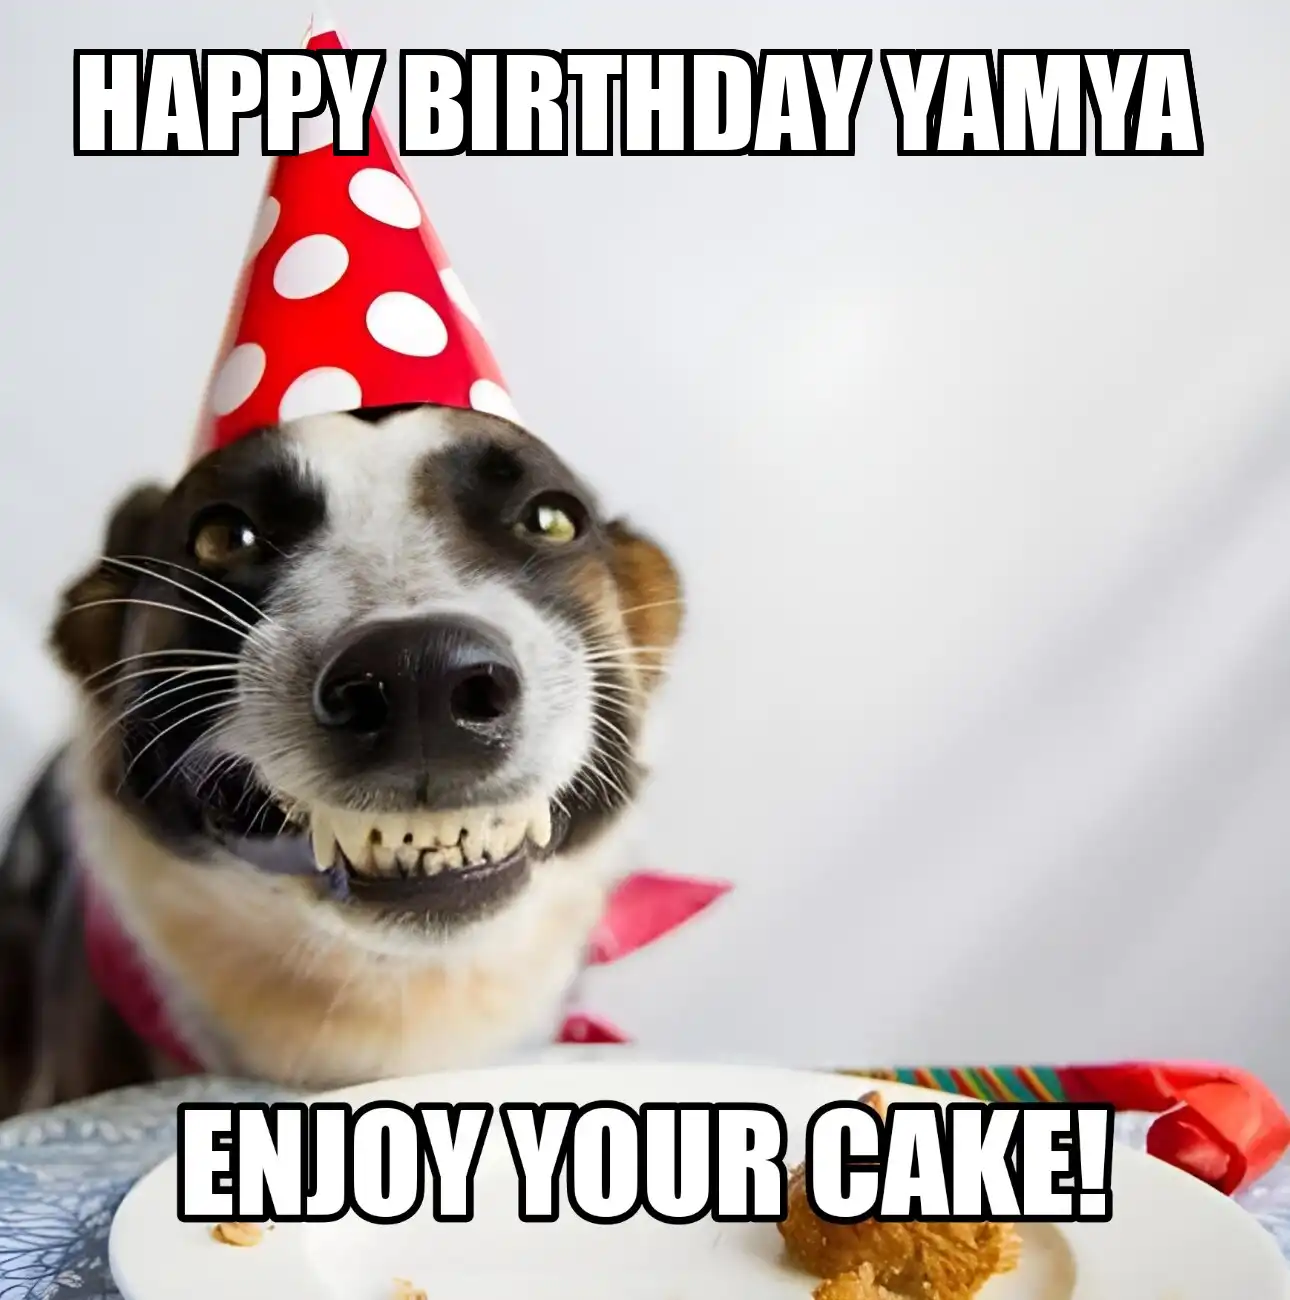 Happy Birthday Yamya Enjoy Your Cake Dog Meme